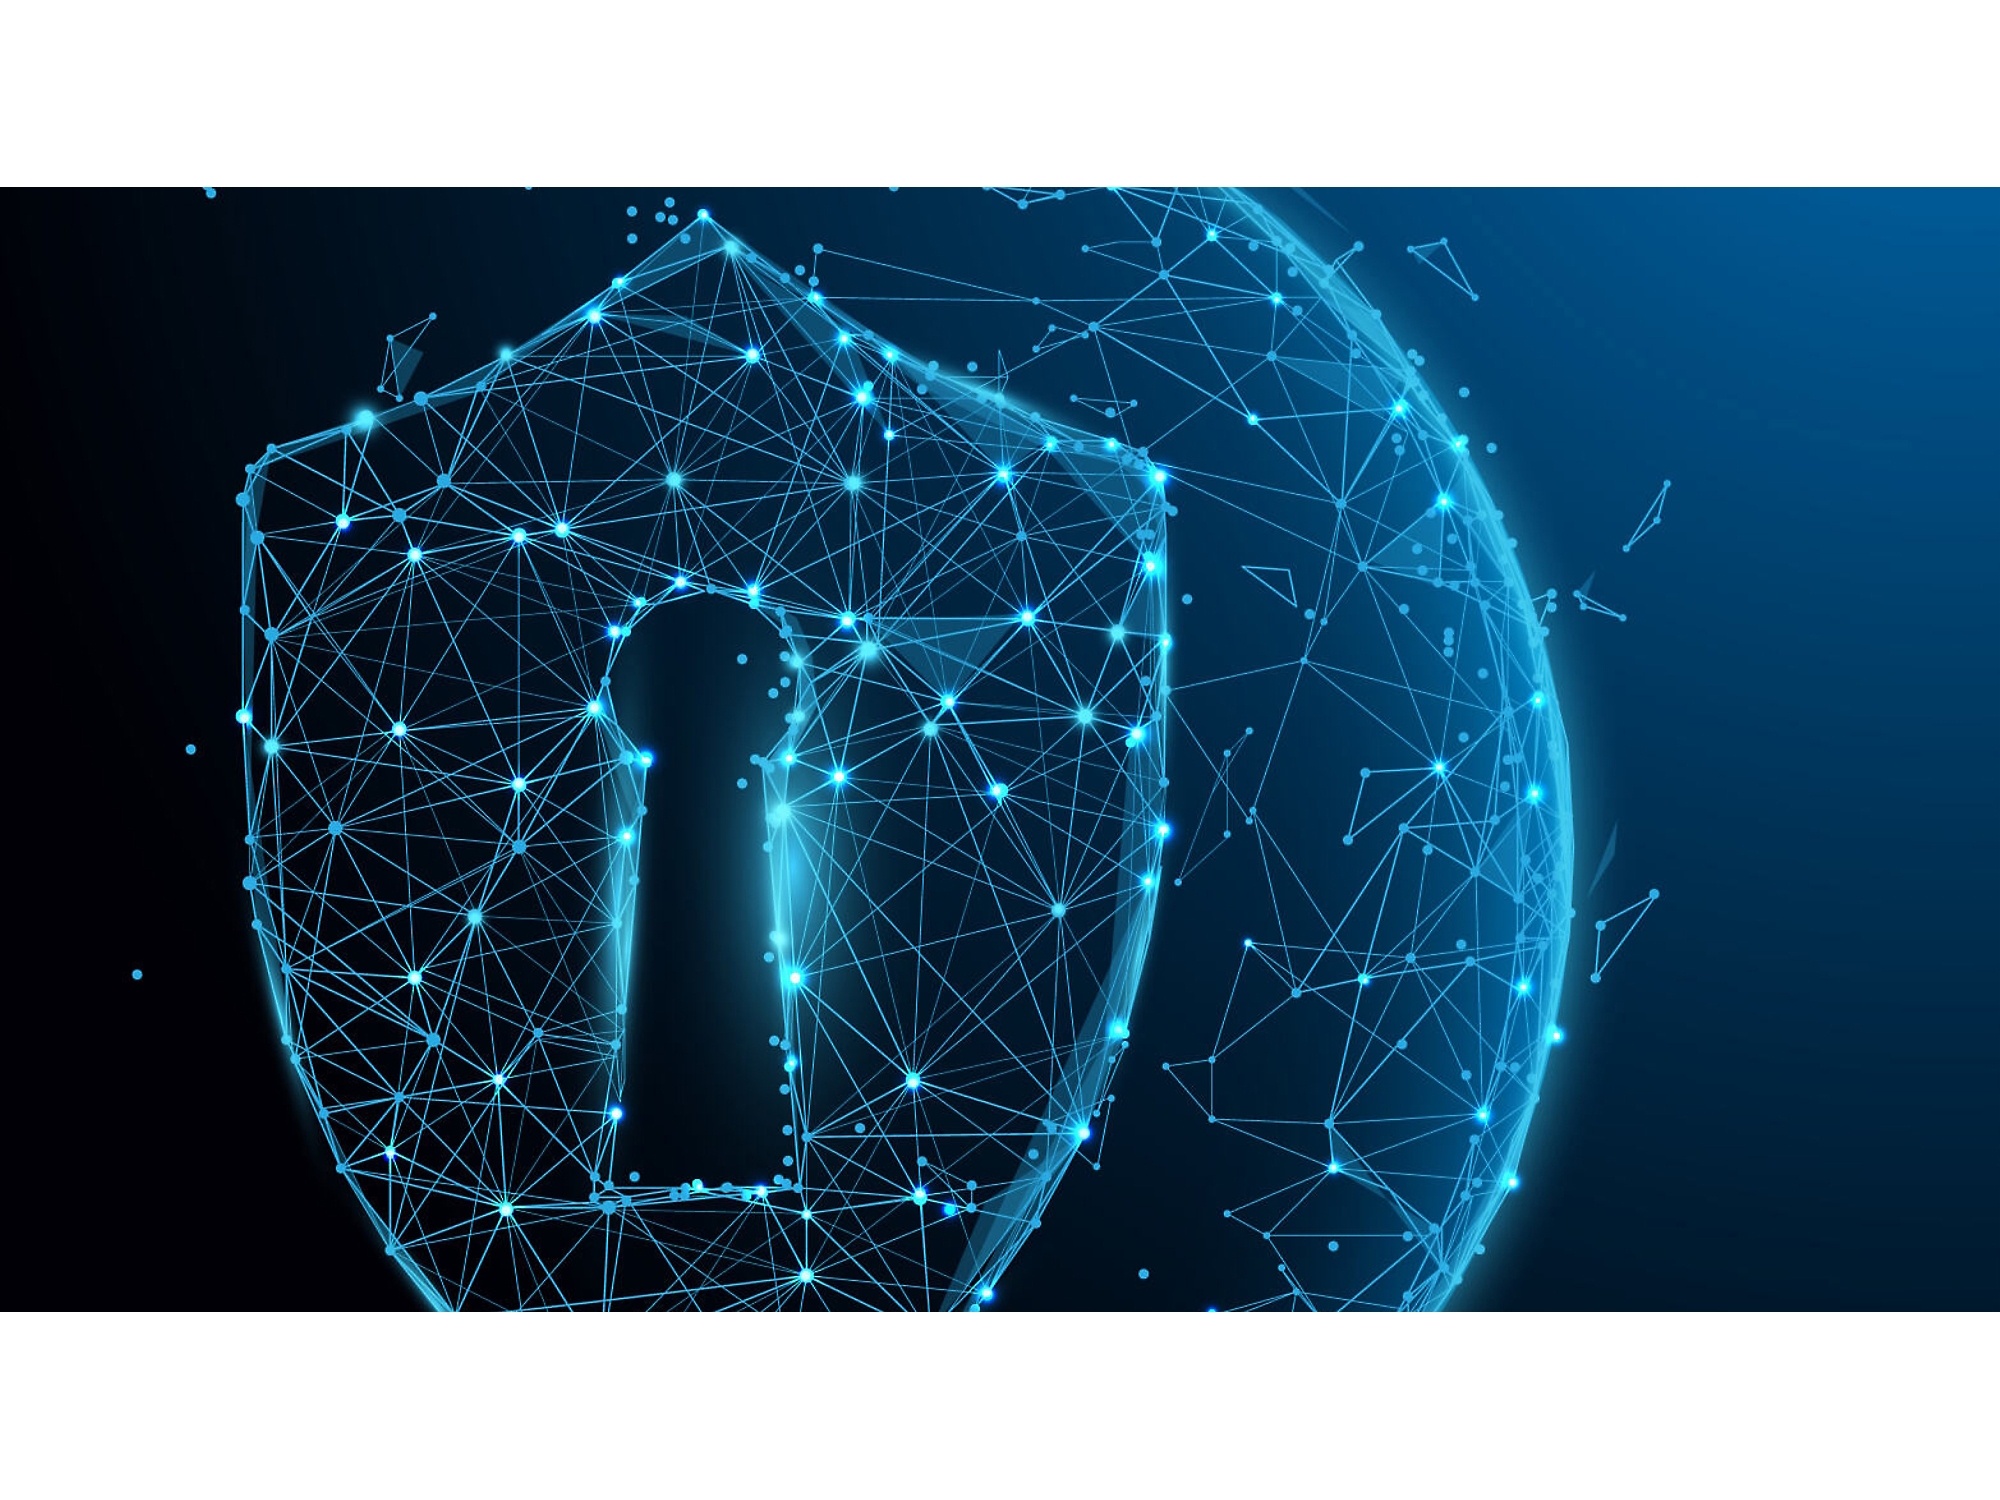 Digitale Illustration eines leuchtend blauen Drahtgitterschilds mit einem Schlüsselloch, das Cybersicherheit symbolisiert